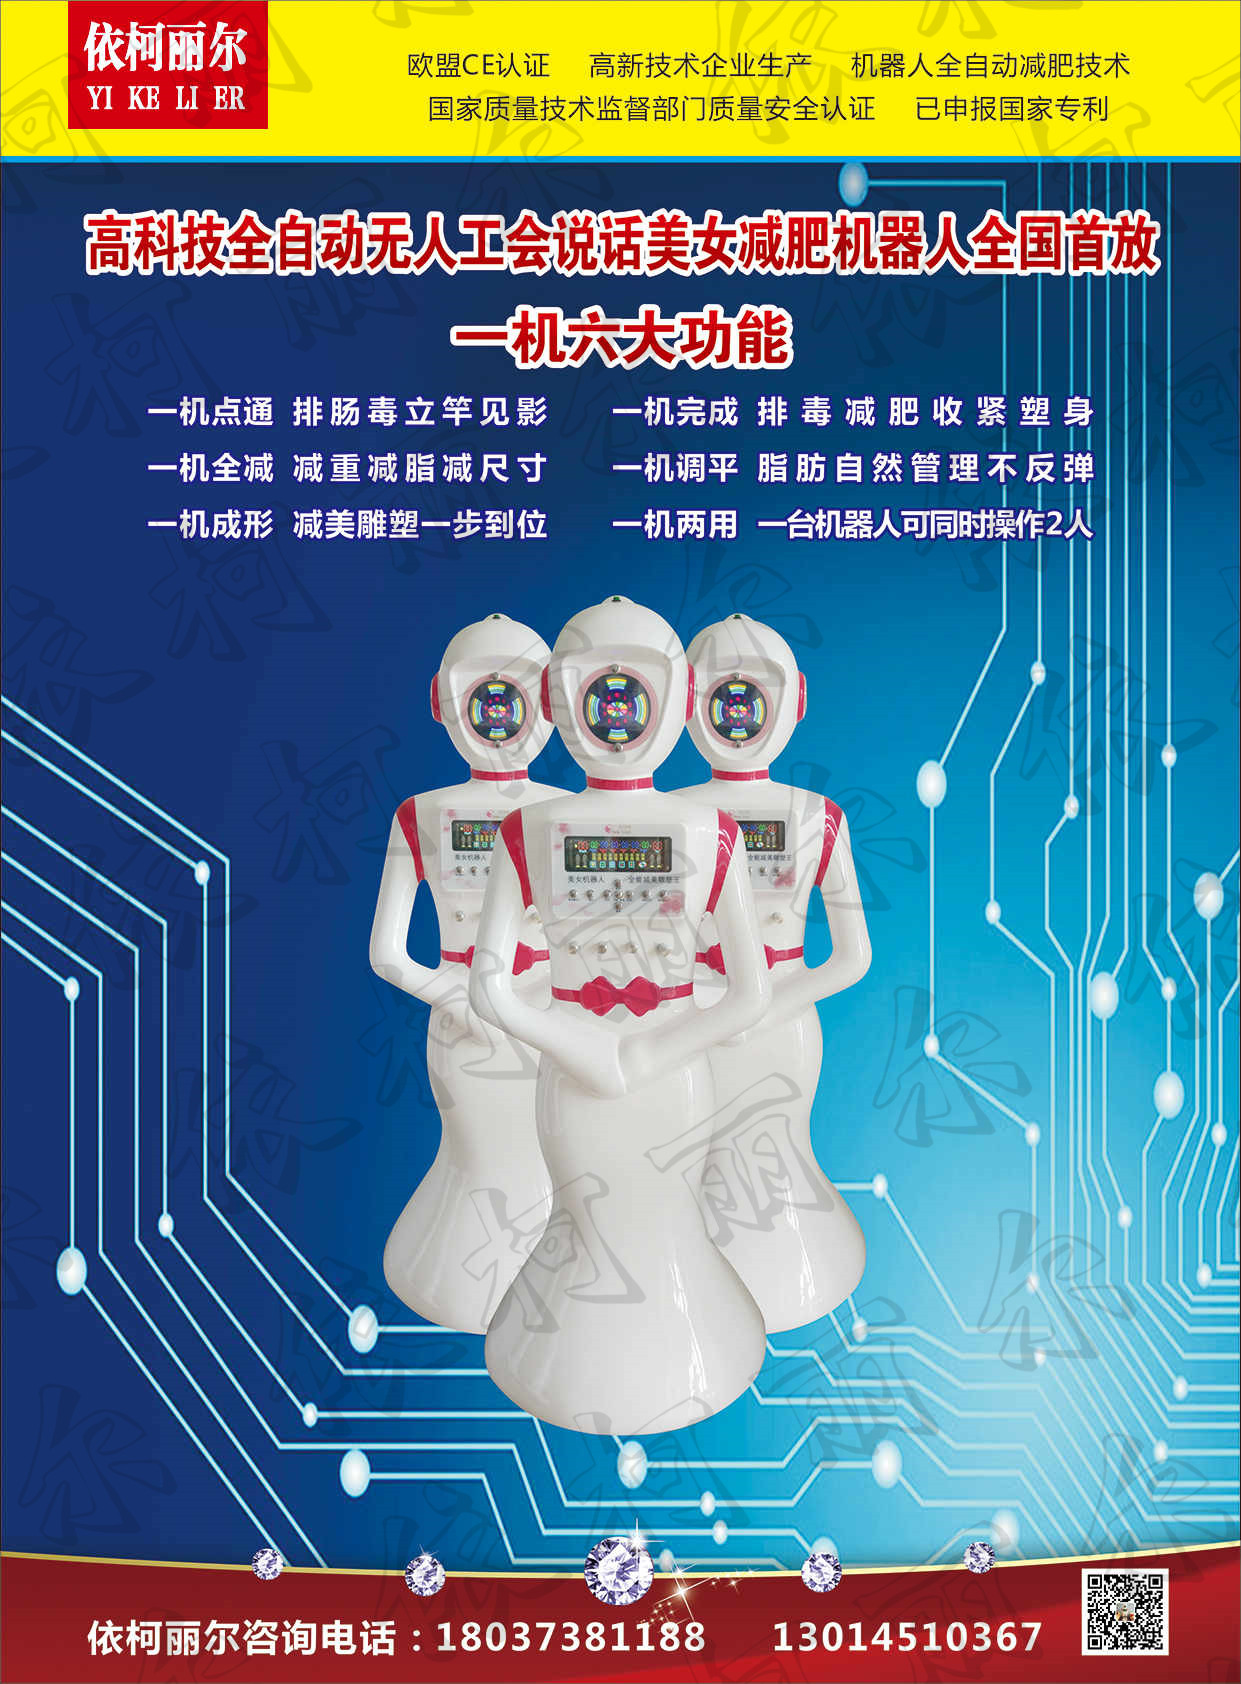 郑州依柯丽尔机器人减肥厂家直销批发